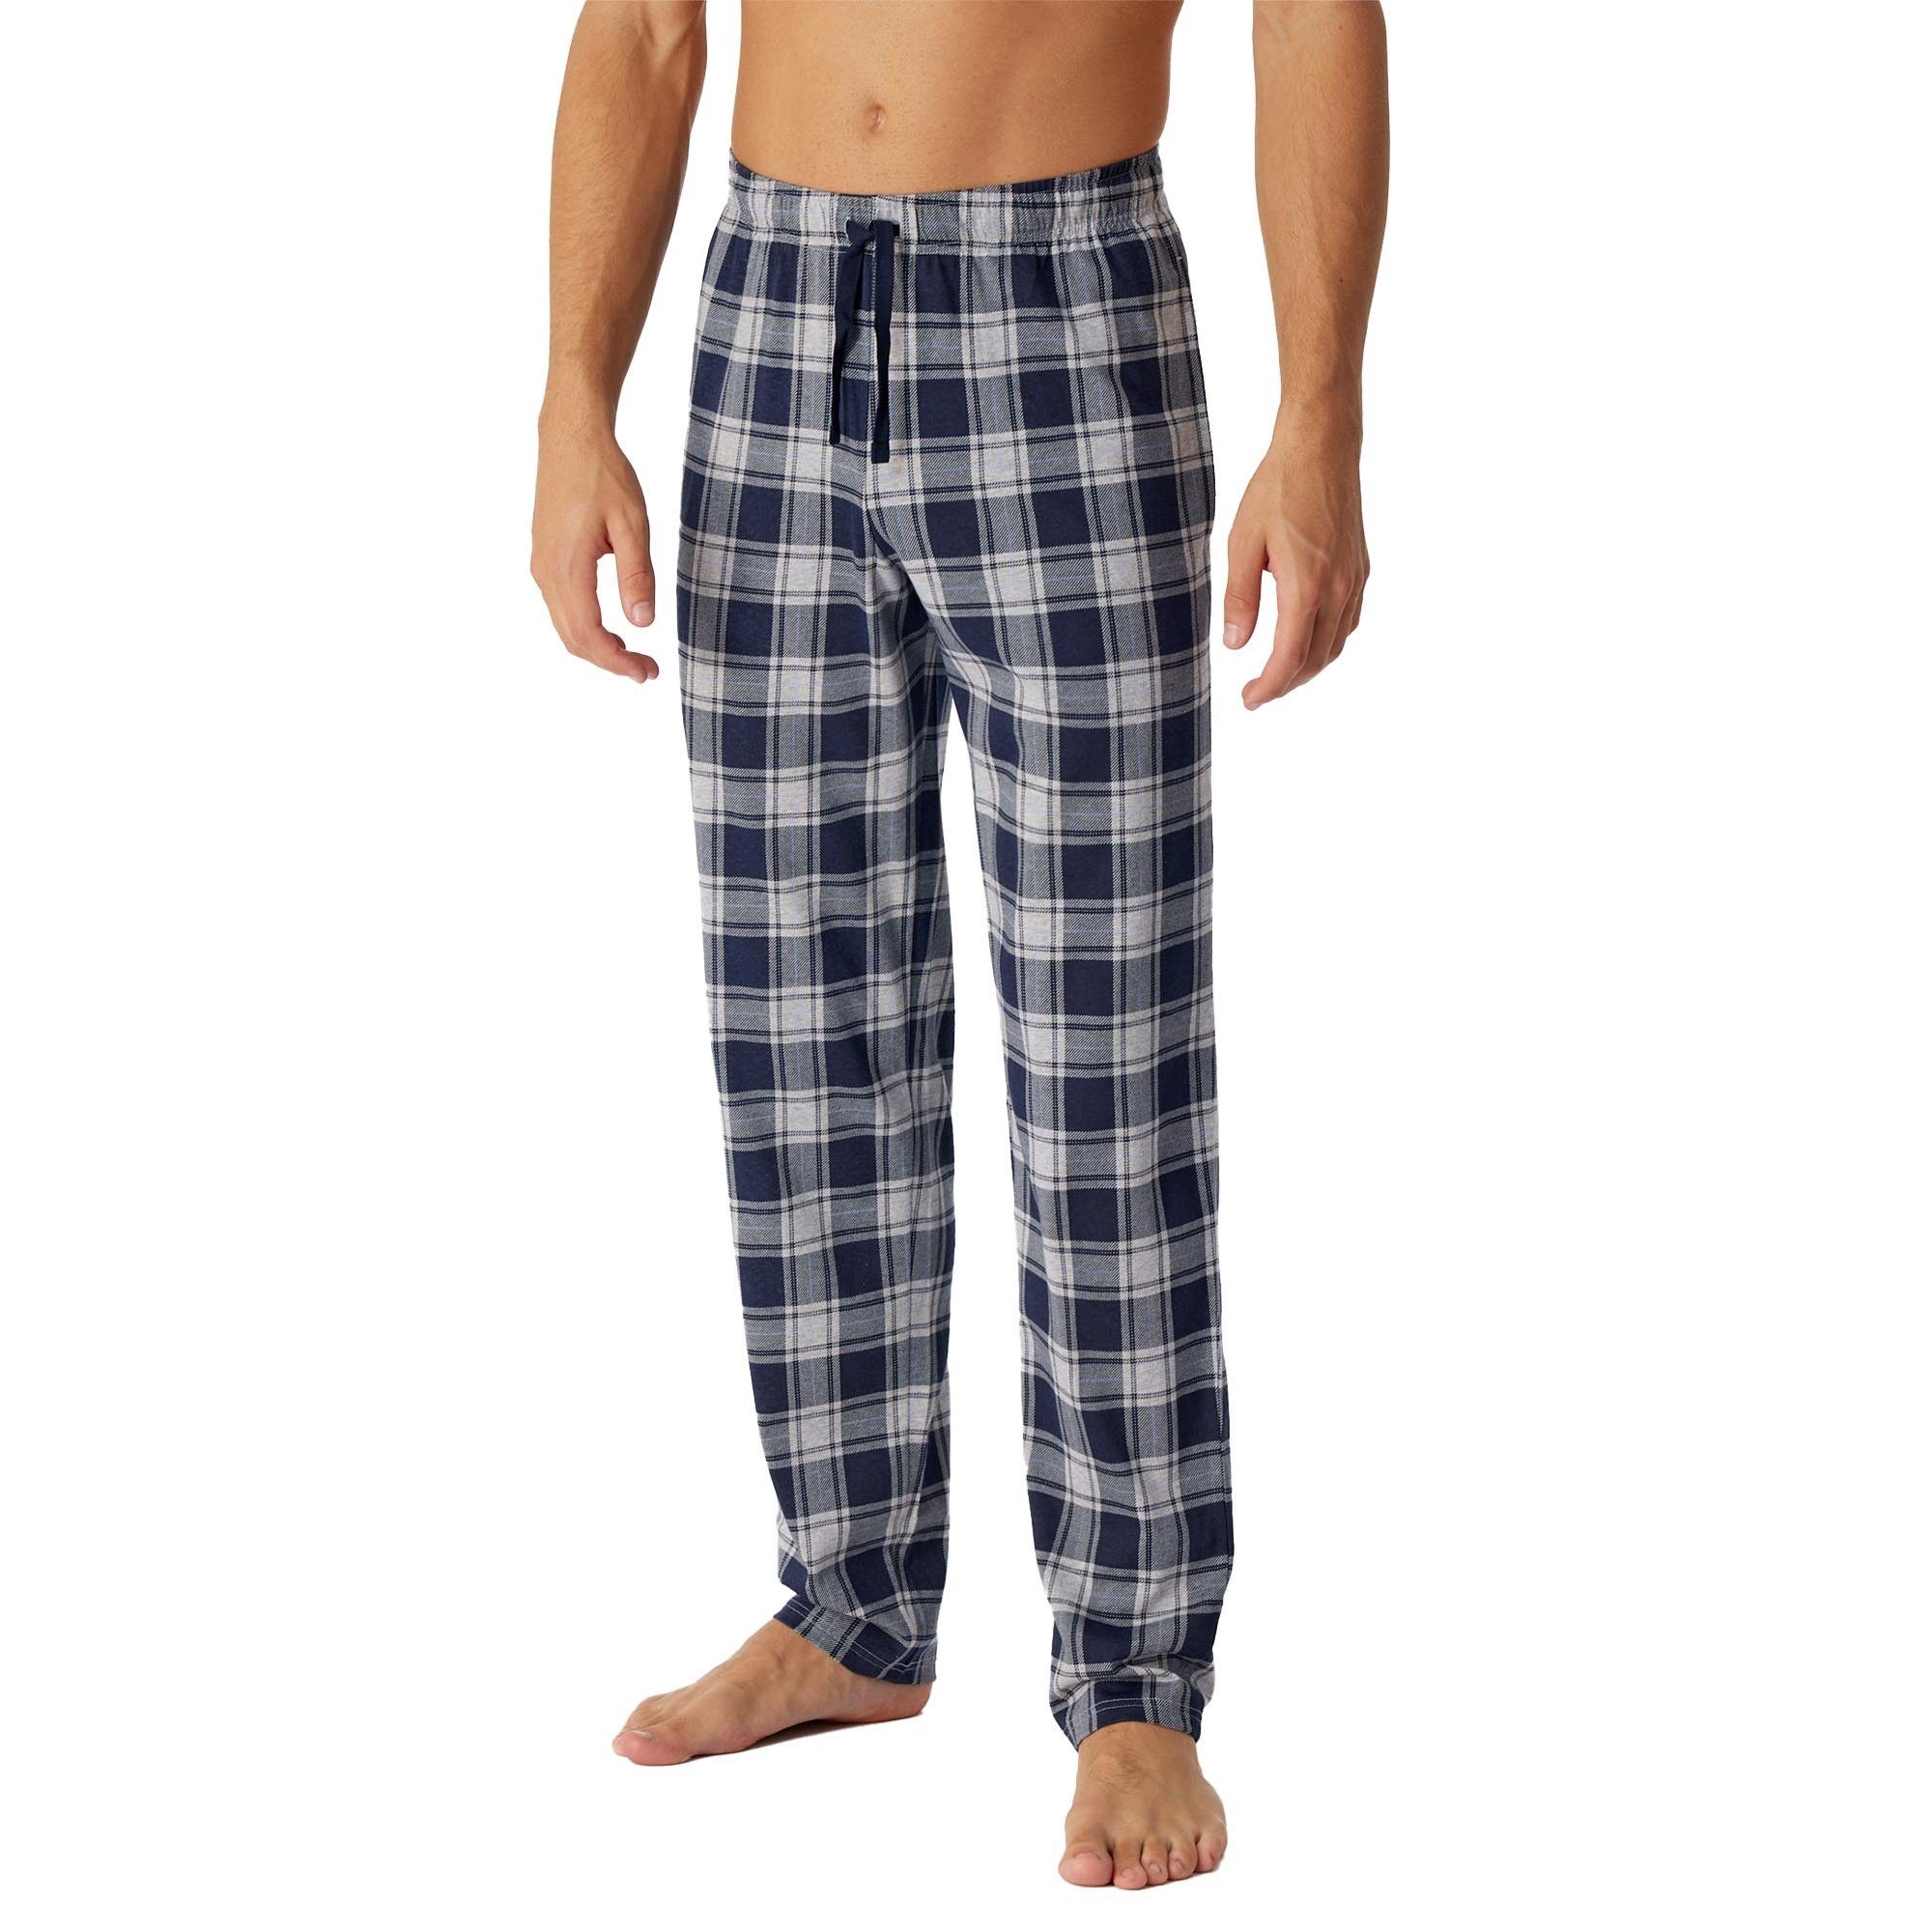 Baumwolle, kariert - Herren Schiesser Pyjama Web-Hose nachtblau Loungehose,